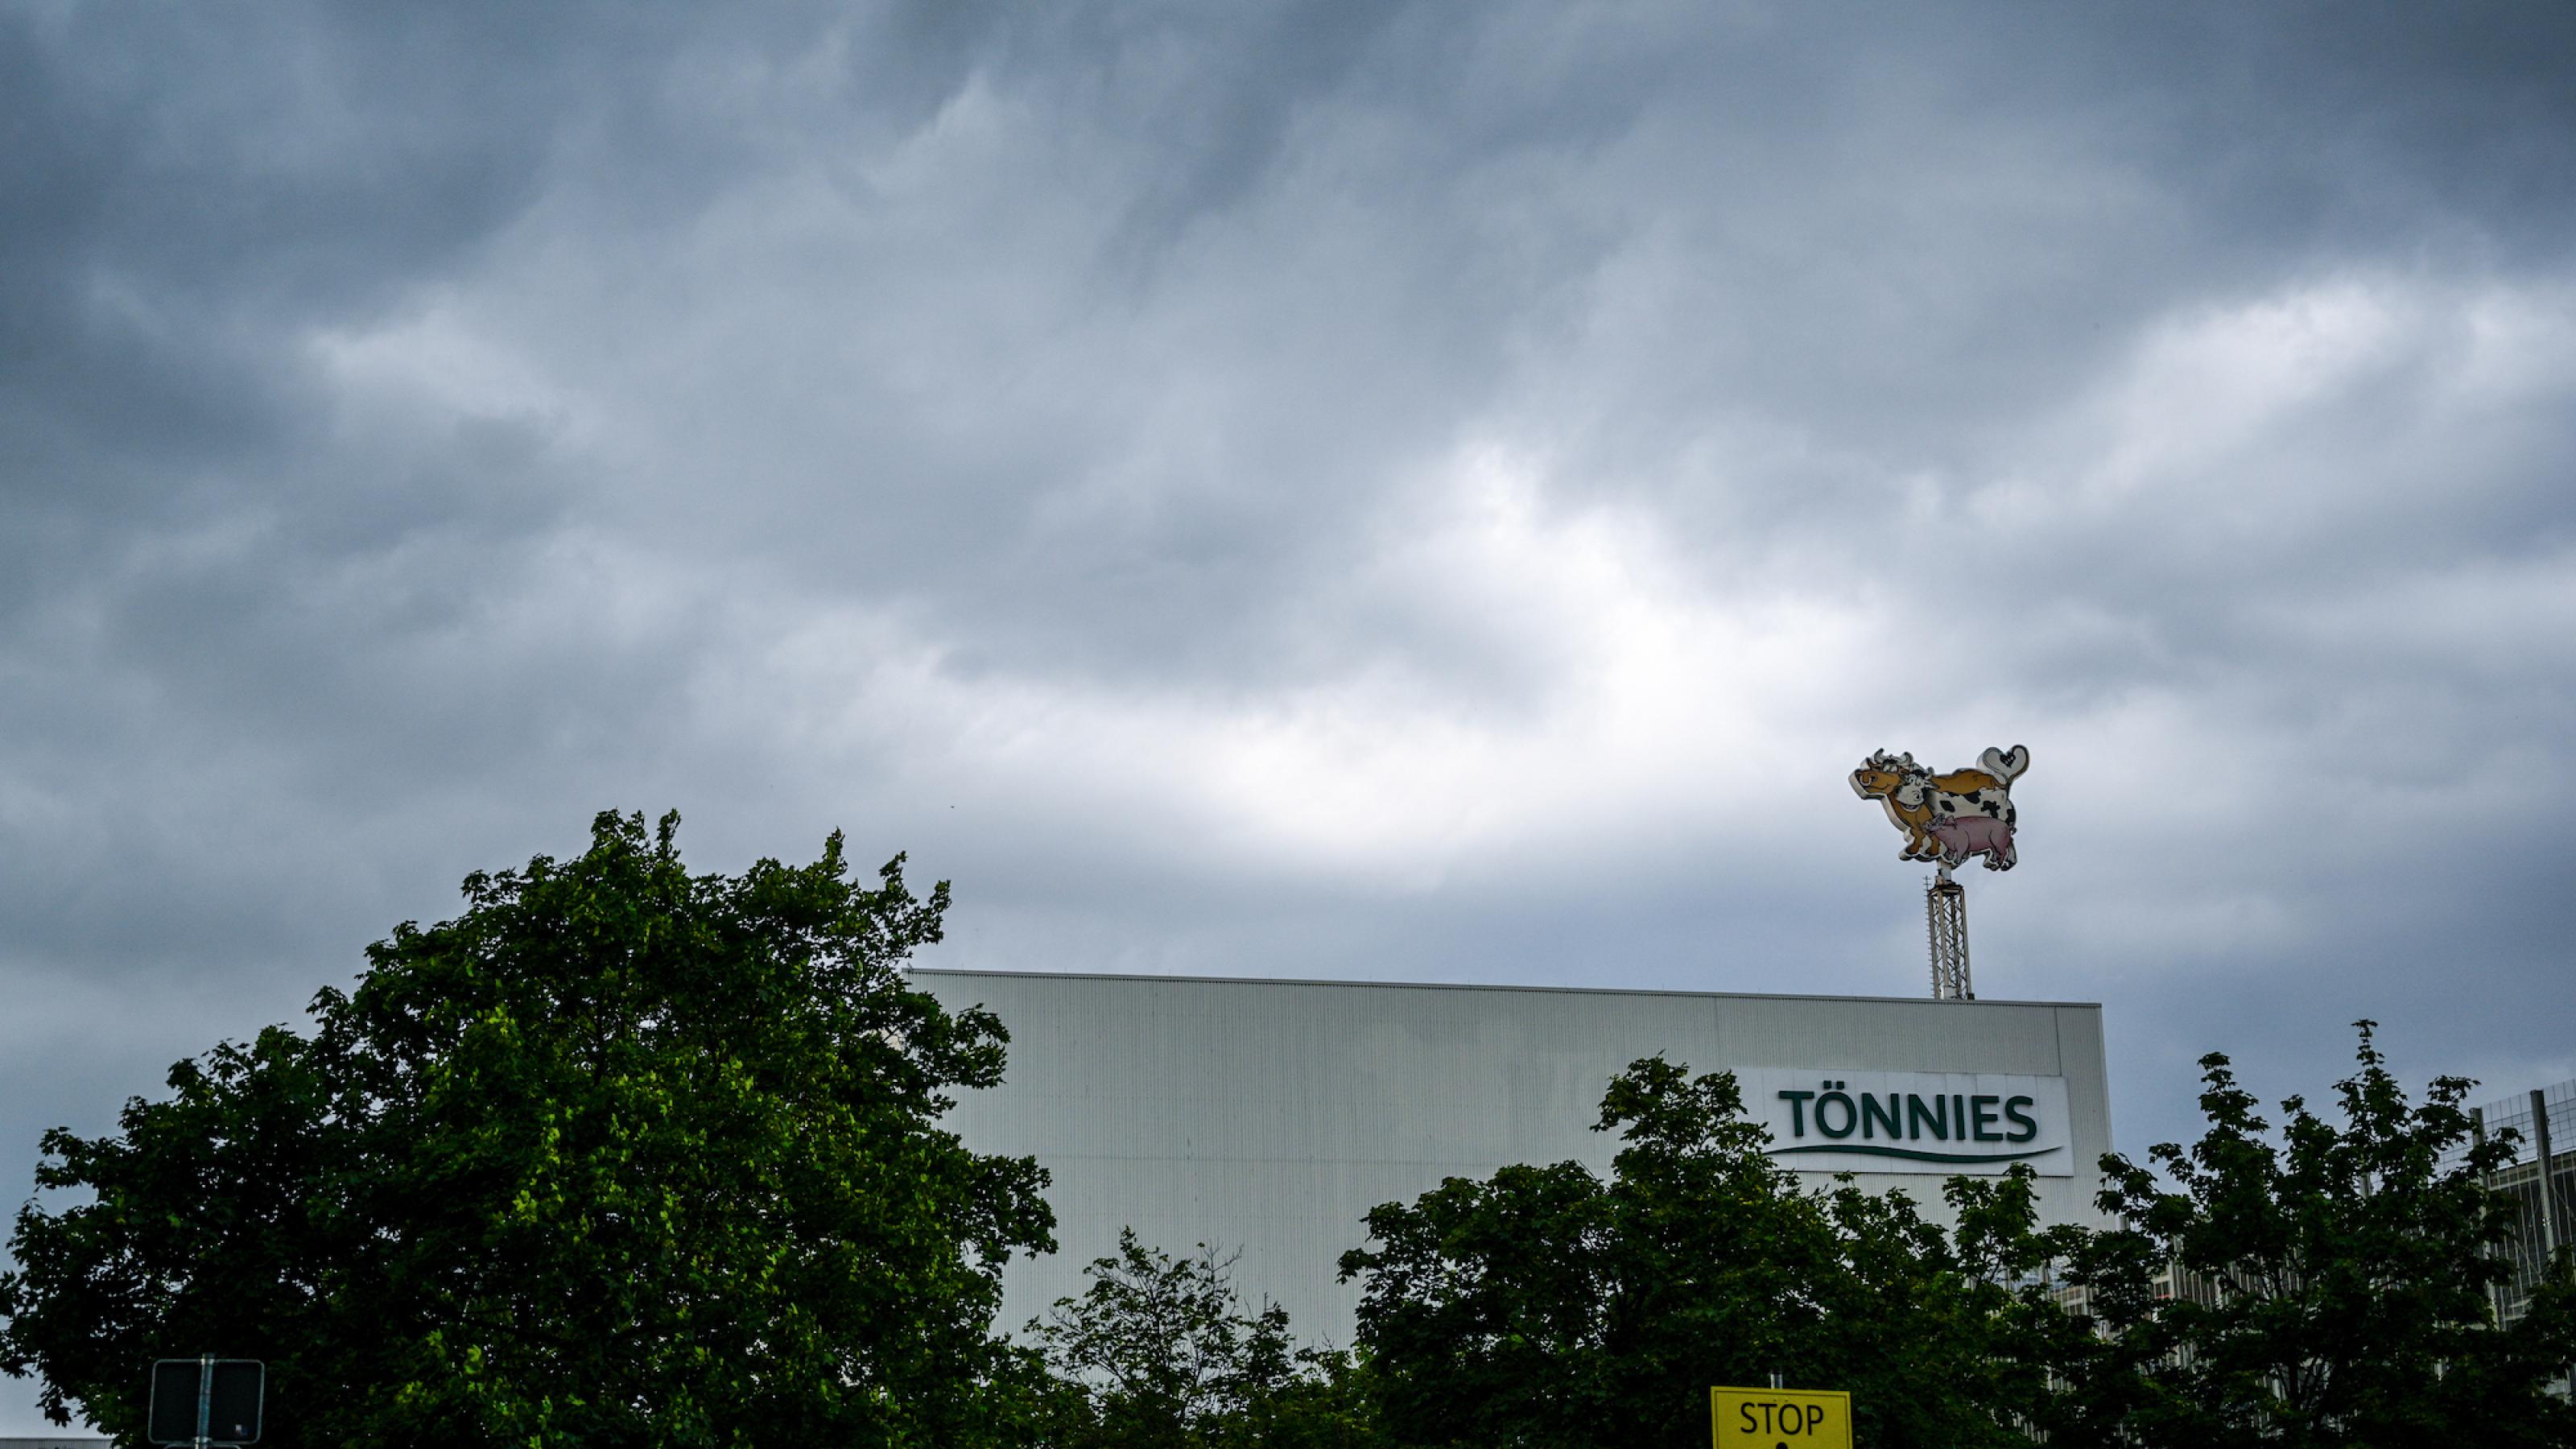 Das Bild zeigt den Firmensitz der Fleischfirma Tönnies im Landkreis Gütersloh, wo es zu einem Massenausbruch des Coronavirus gekommen ist. Auf dem Dach eines Fabrikgebäudes ist eine Leuchtschrift mit einer Kuh und einem Schwein installiert.